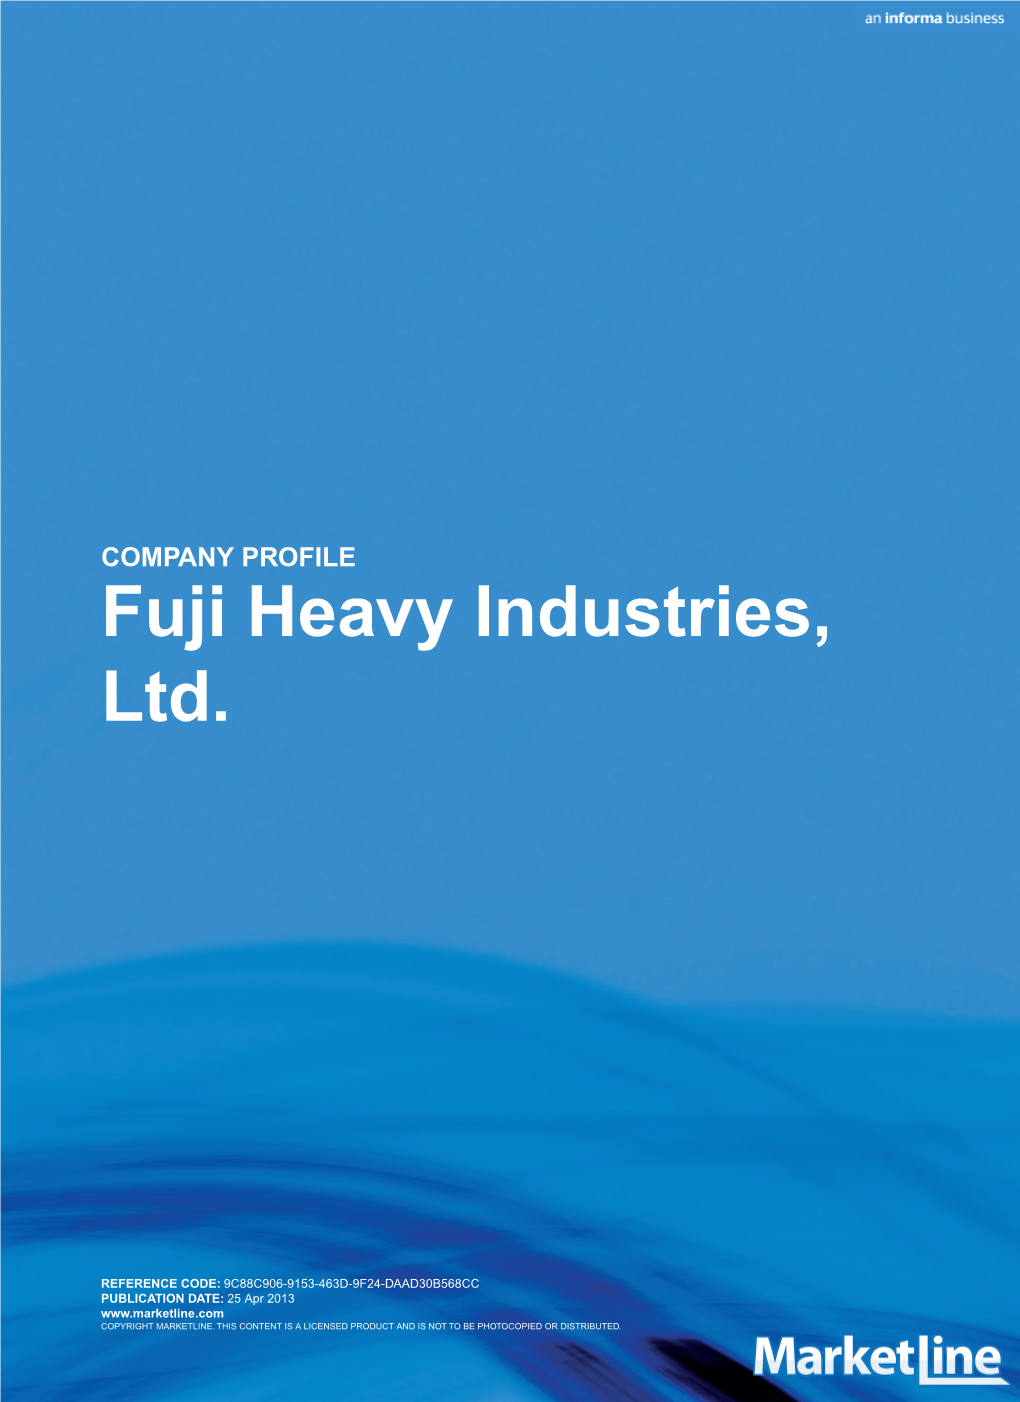 Fuji Heavy Industries, Ltd